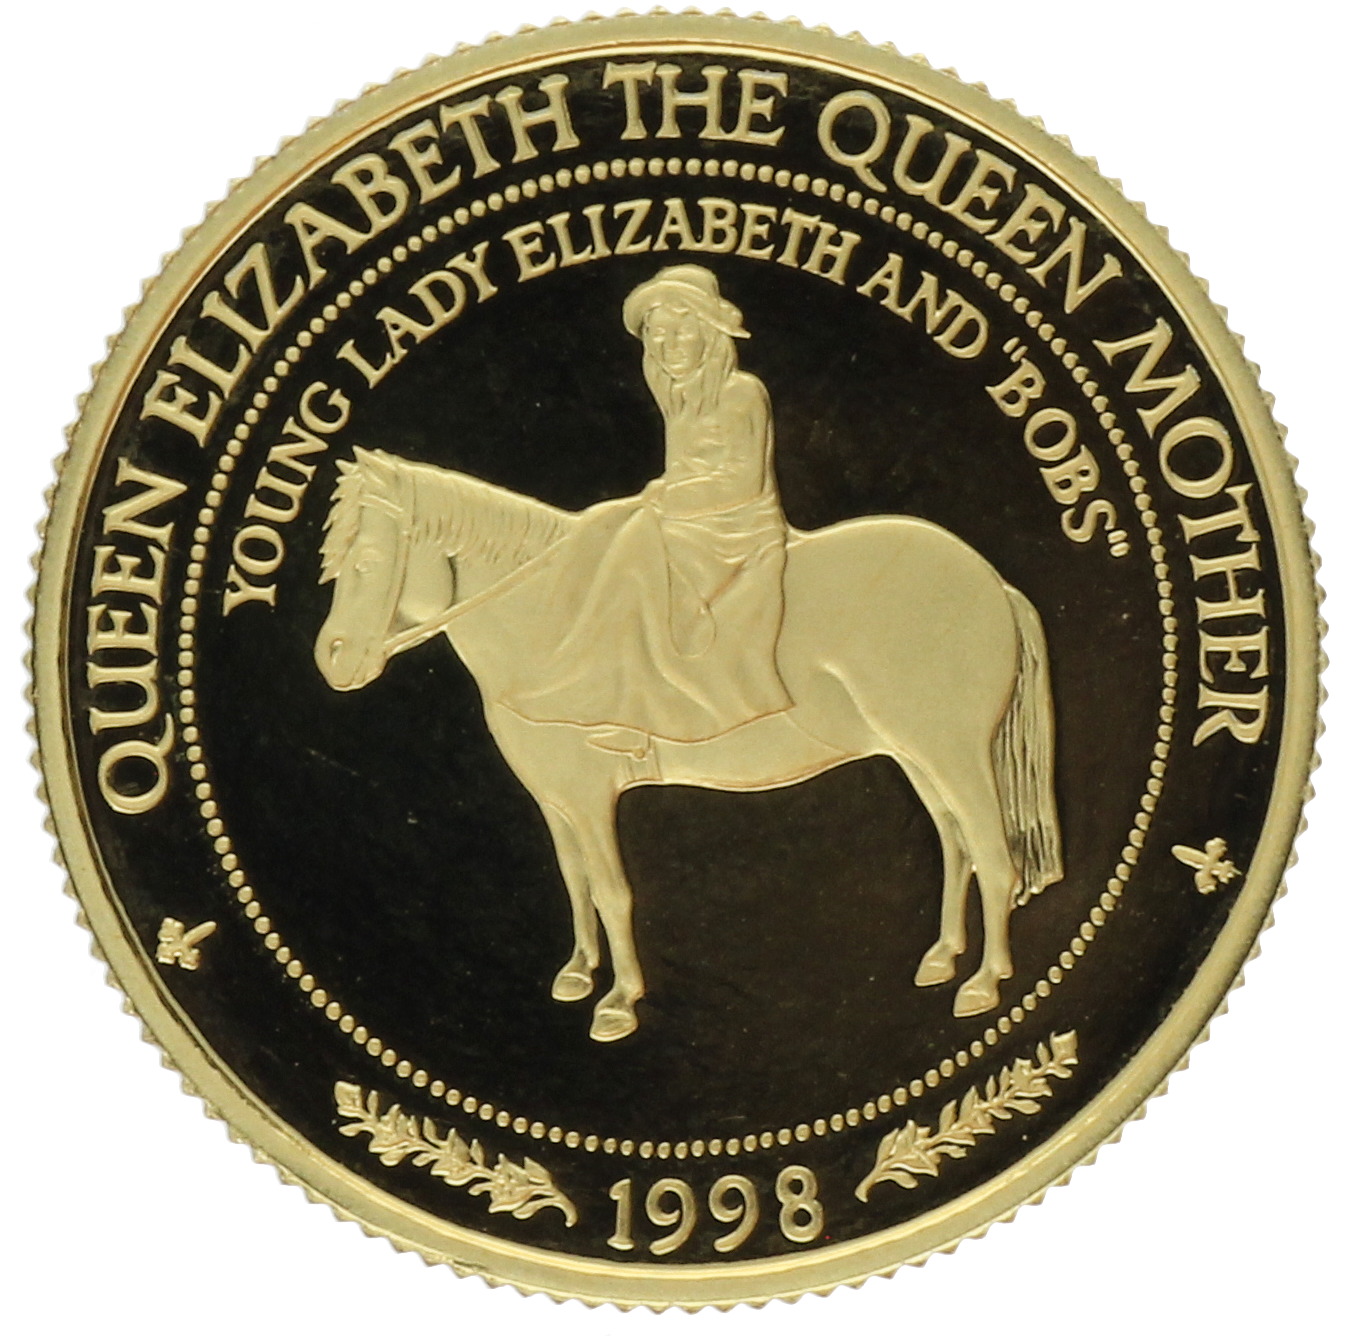 Samoa - 50 dollars - 1998 - Elizabeth II